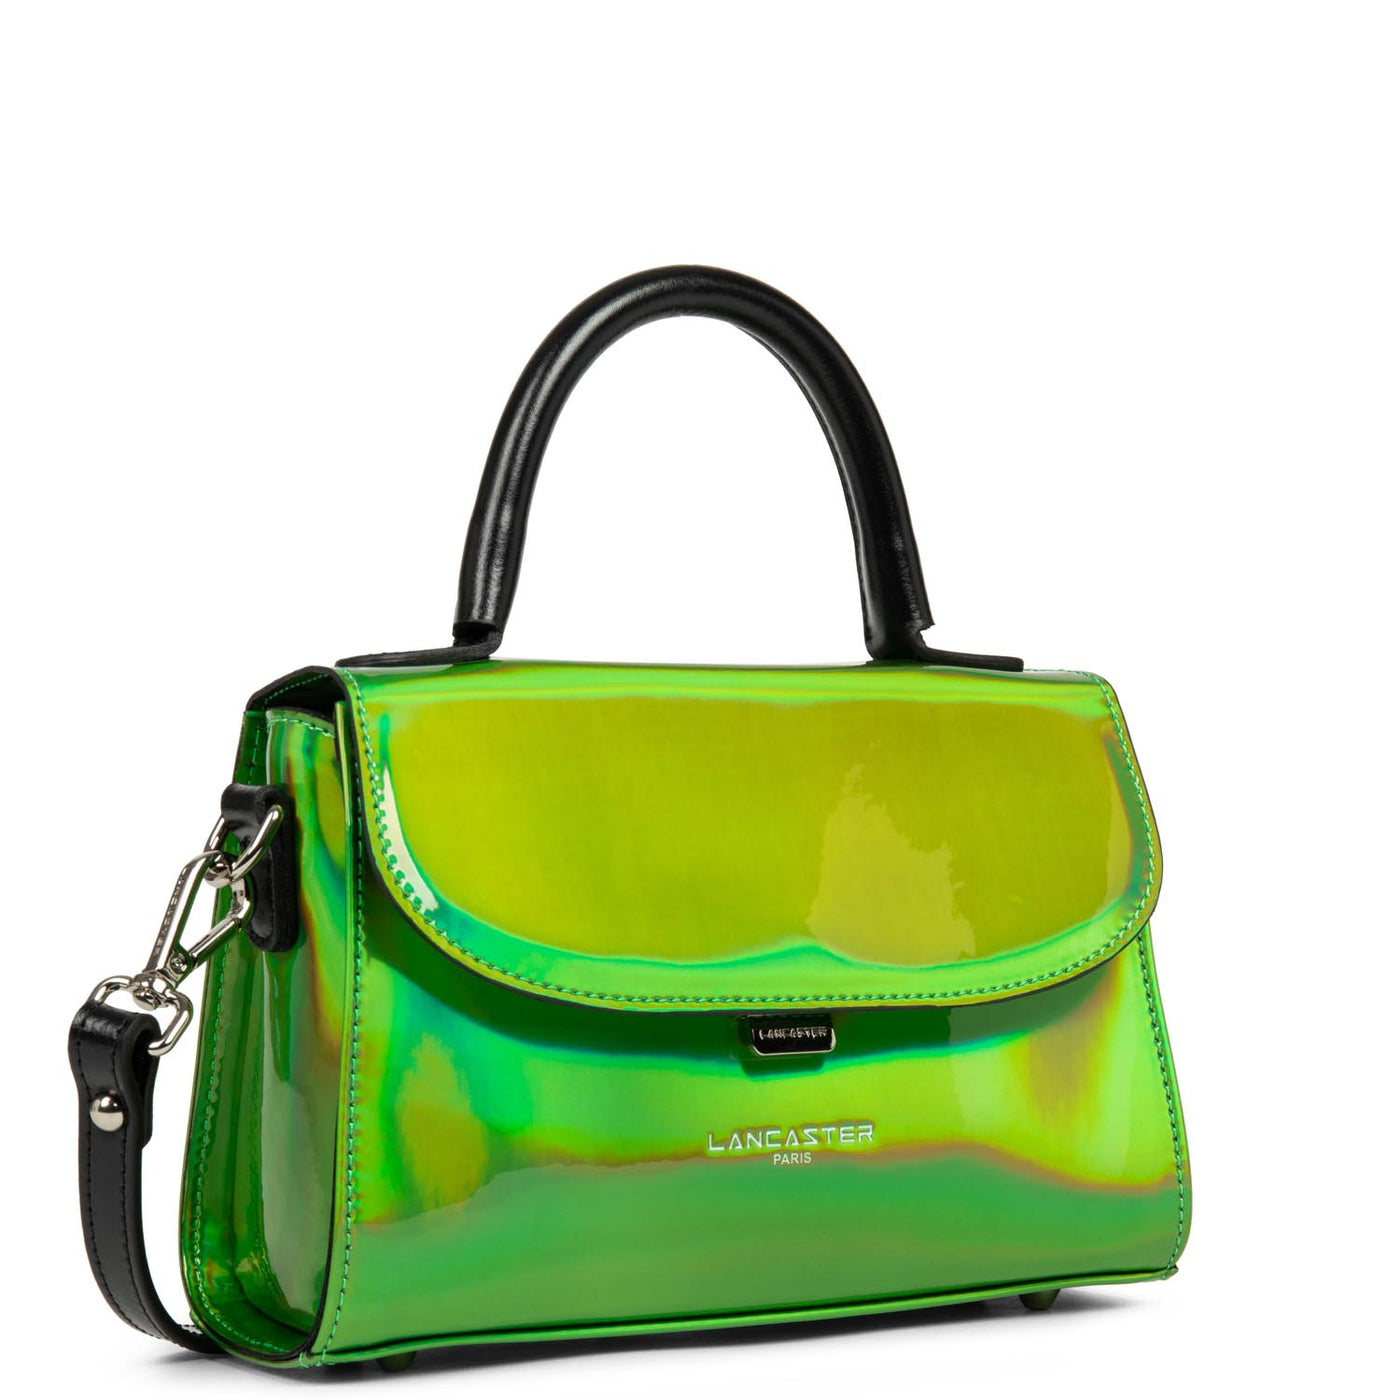 sac à main - glass irio #couleur_vert